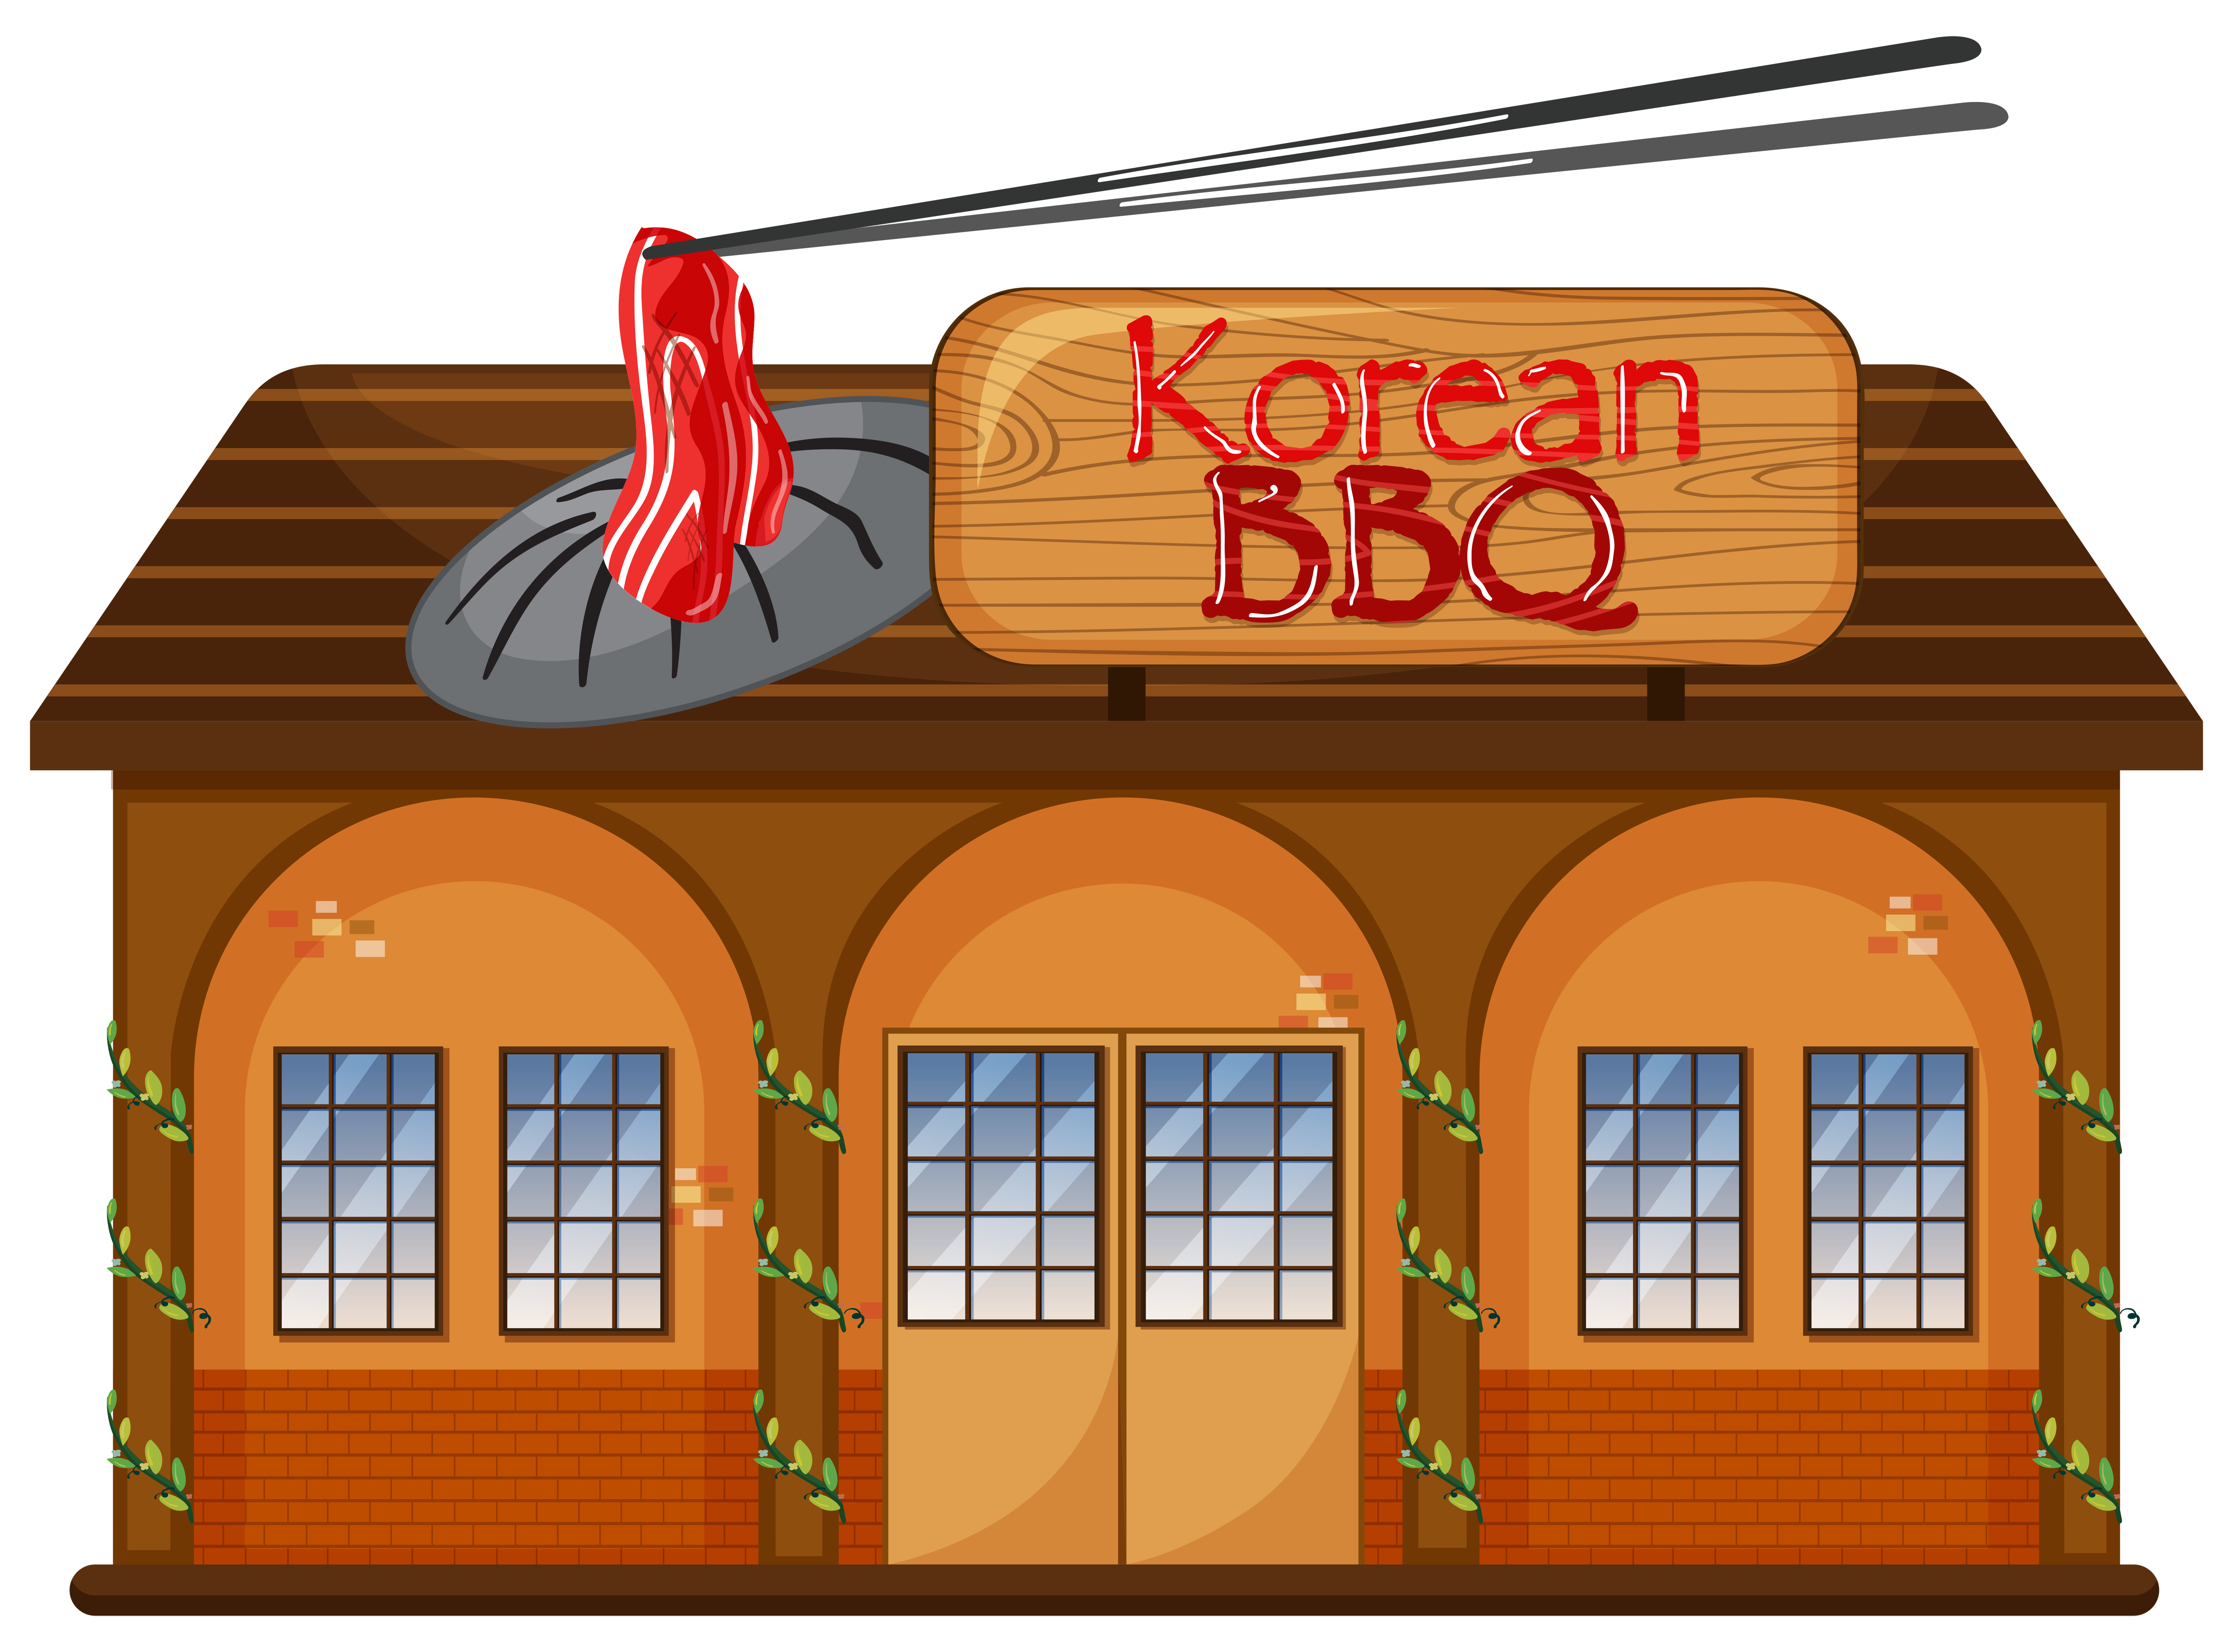 A Korean BBQ restaurant 362096 Download Free Vectors Clipart Graphics & Vector Art